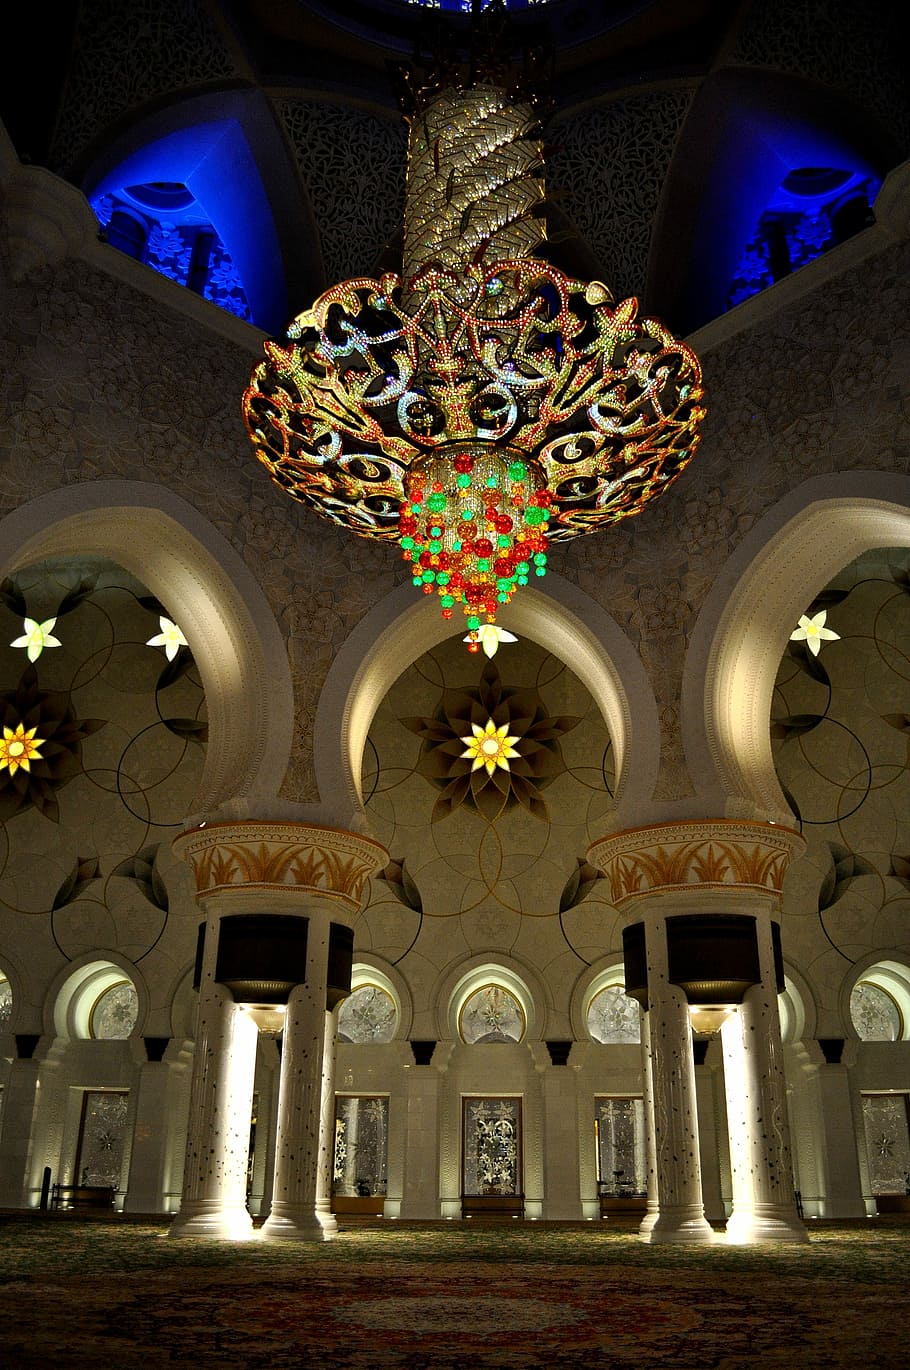 Grand Mosque, Abu Dhabi, Uae, Islam, emirates, mosque, interior, inside, islamic, architecture